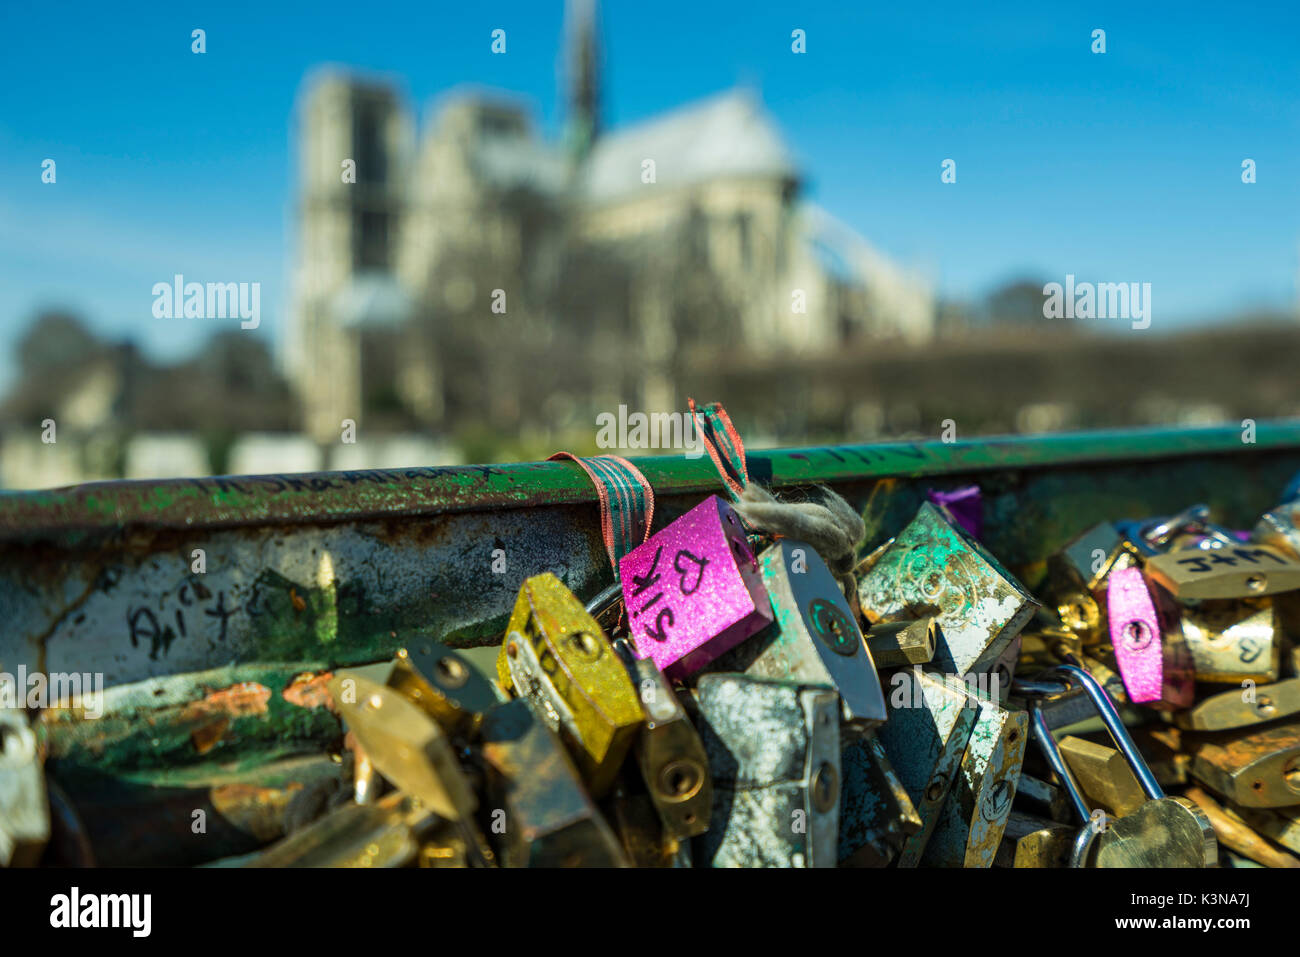 Pont de l'Archeveche in Paris, padlocks left by lovers,Paris, France Stock Photo